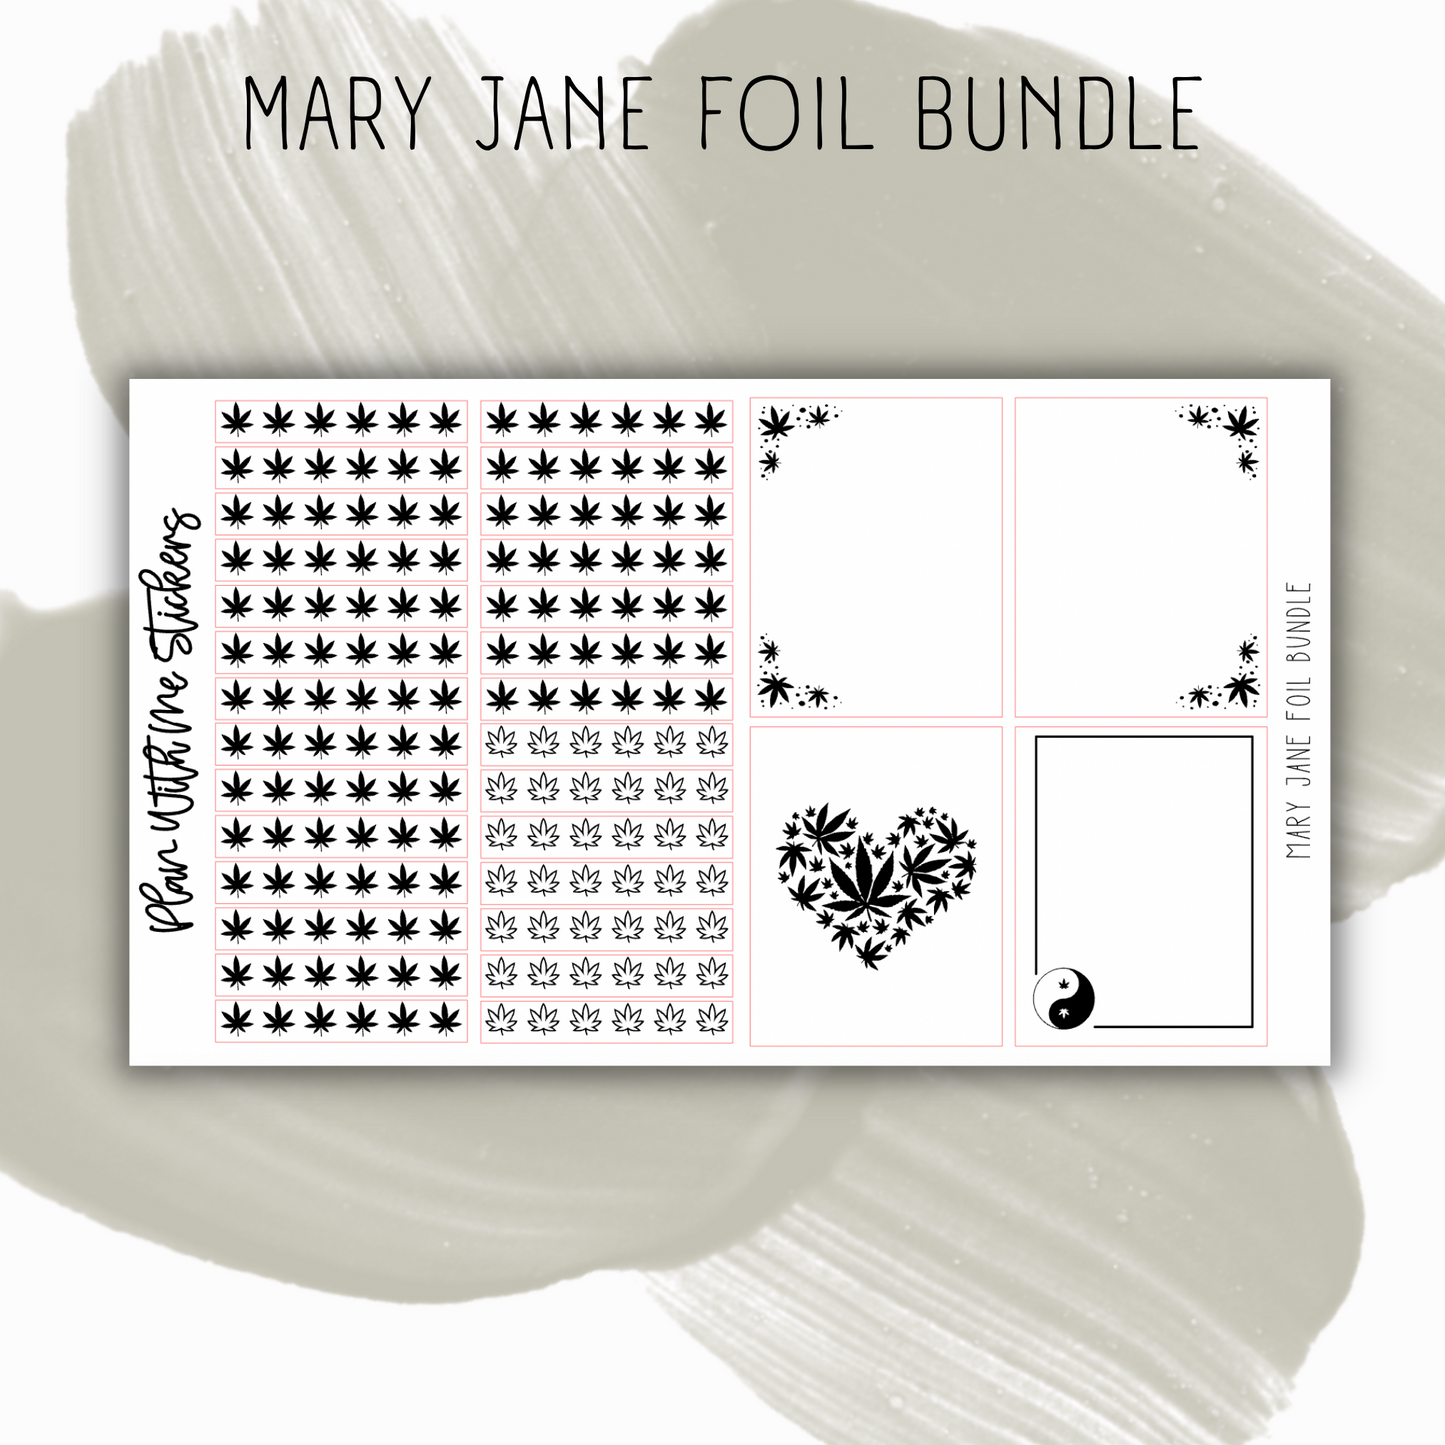 Mary Jane Foil Bundle